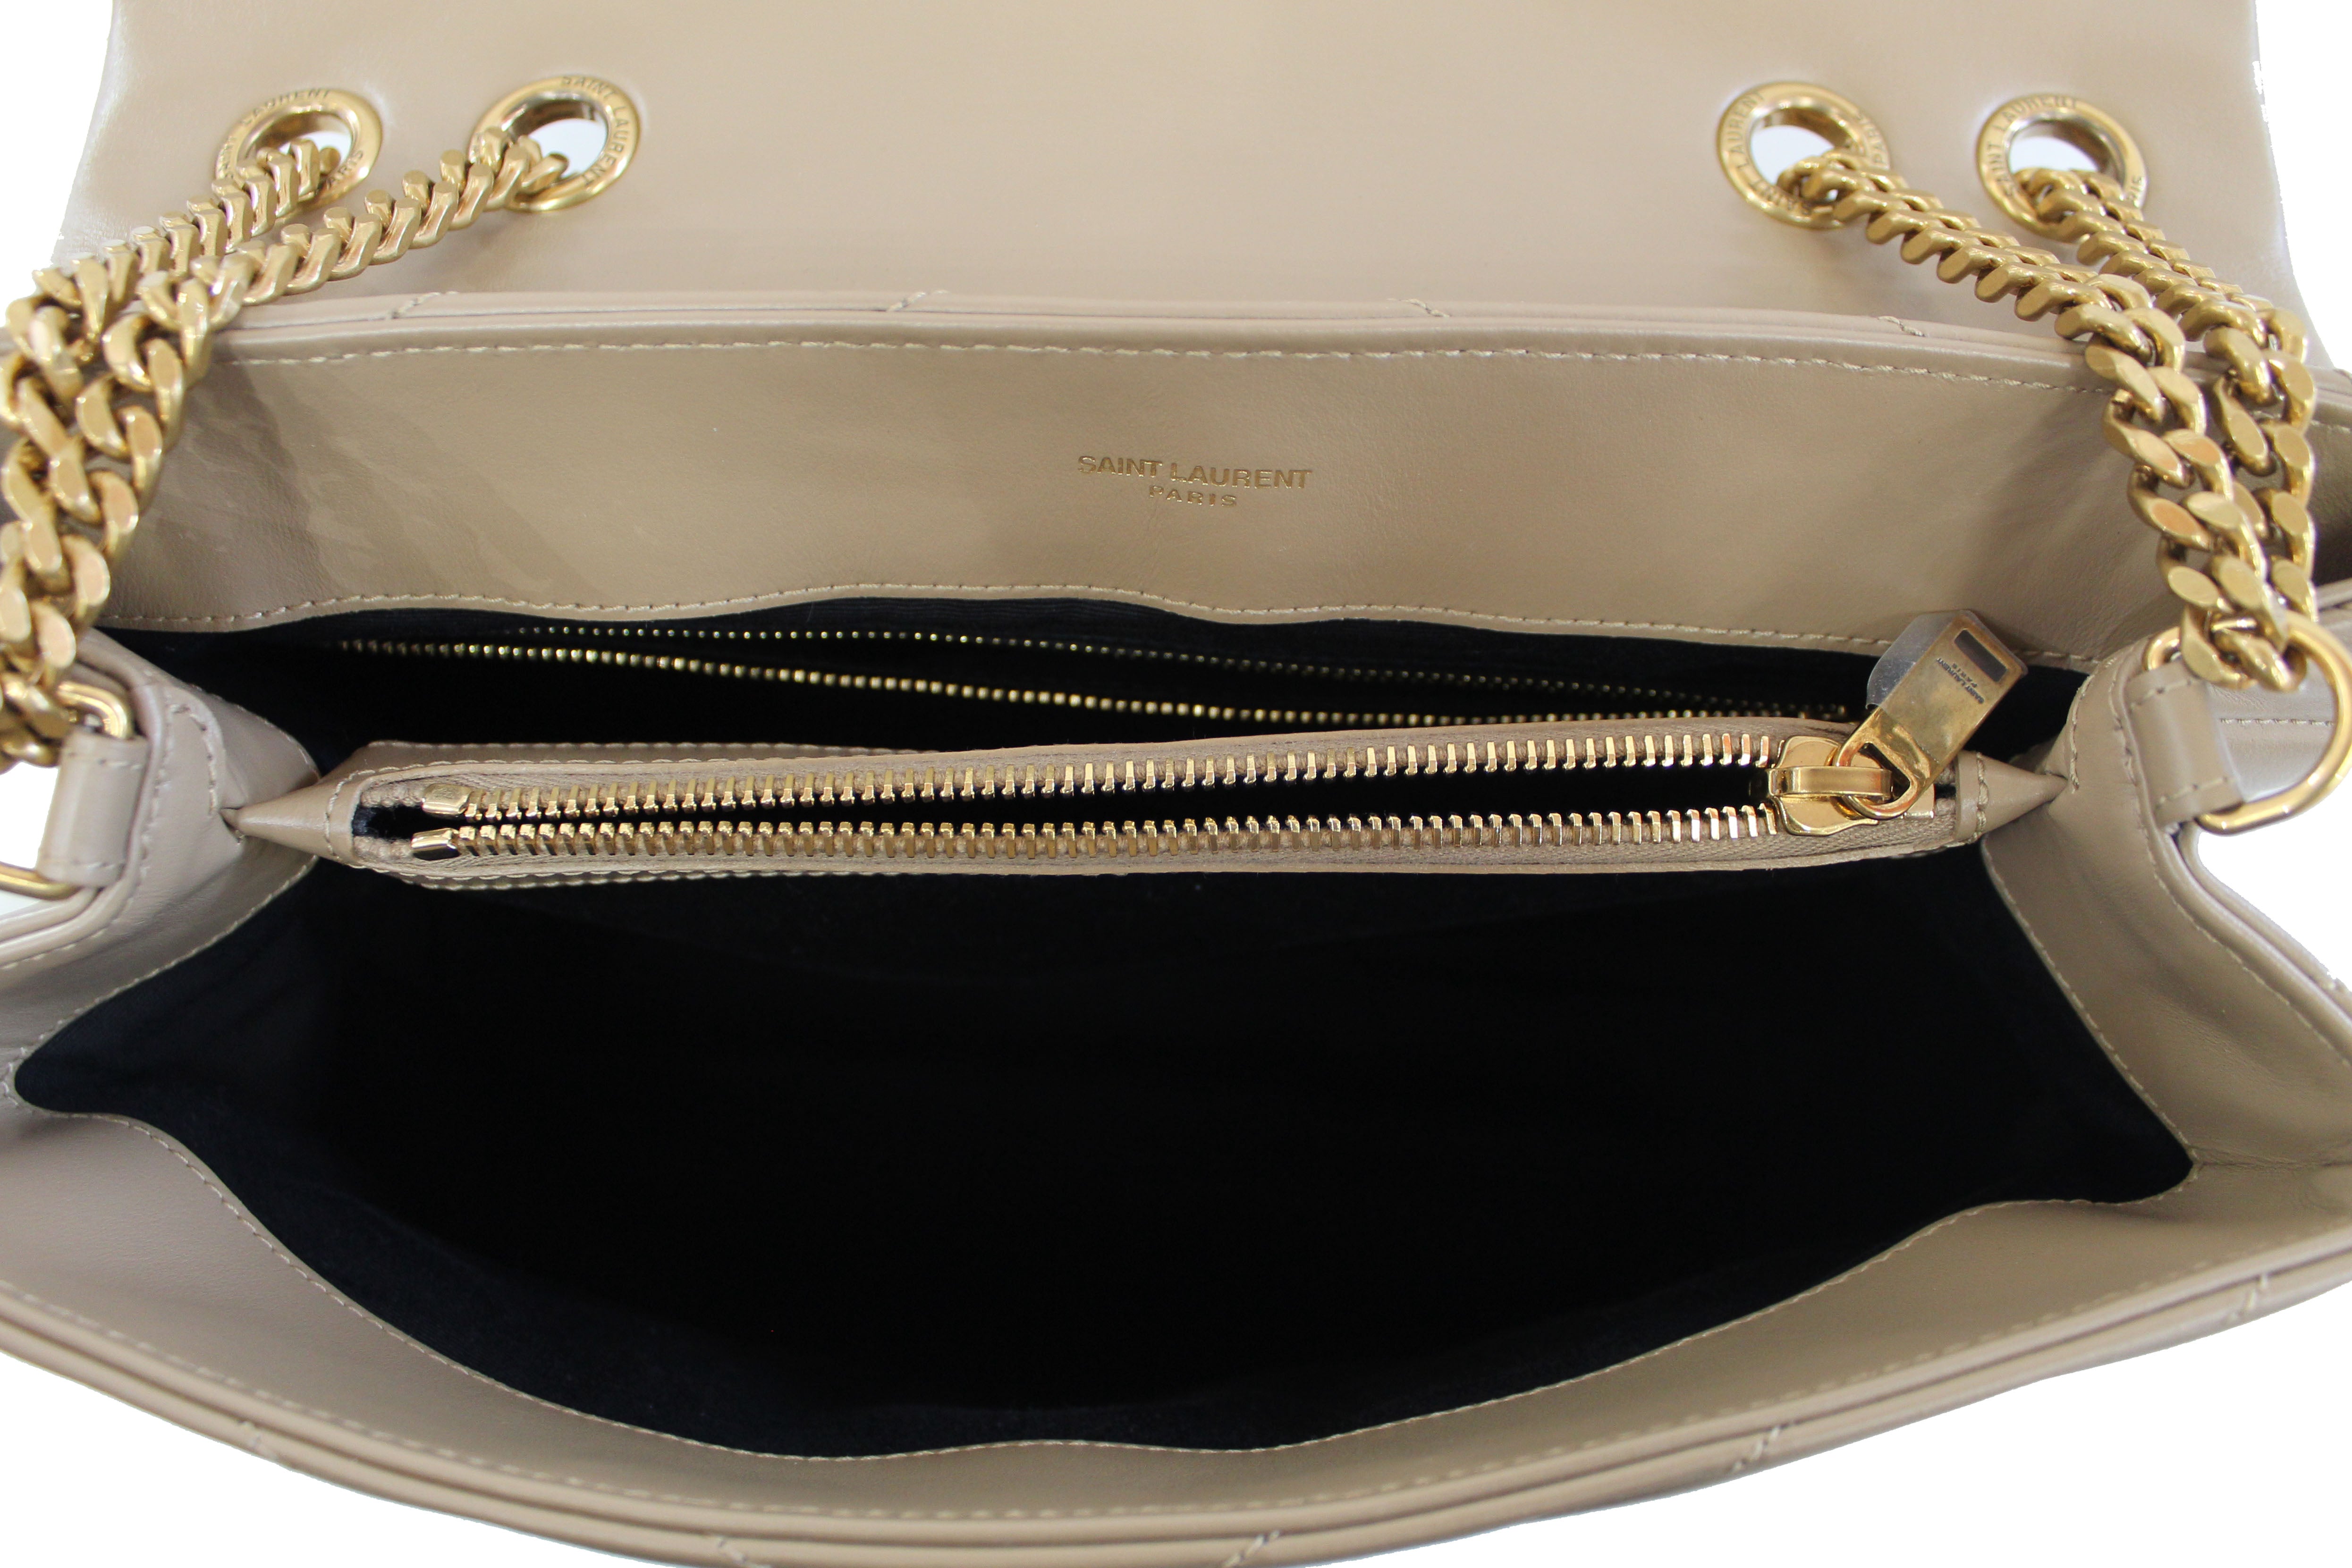 Handbag Yves Saint Laurent Beige in Wicker - 35136937